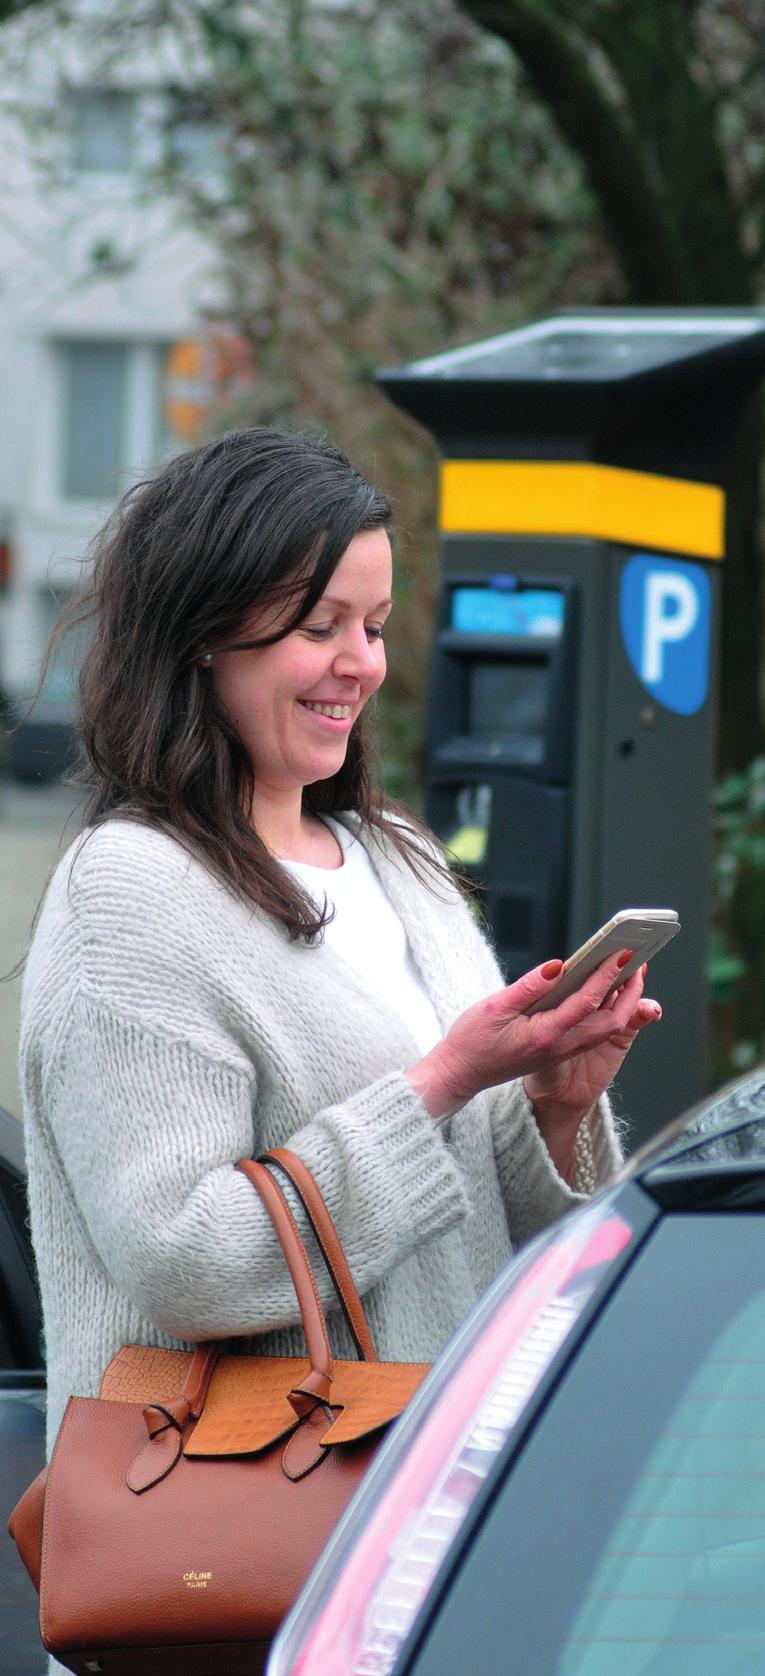 Hoe betalen? Aan de parkeerautomaten betaalt u met muntstukken of met uw bank- of kredietkaart. In Sint-Niklaas hoeft u geen ticket voor te leggen.